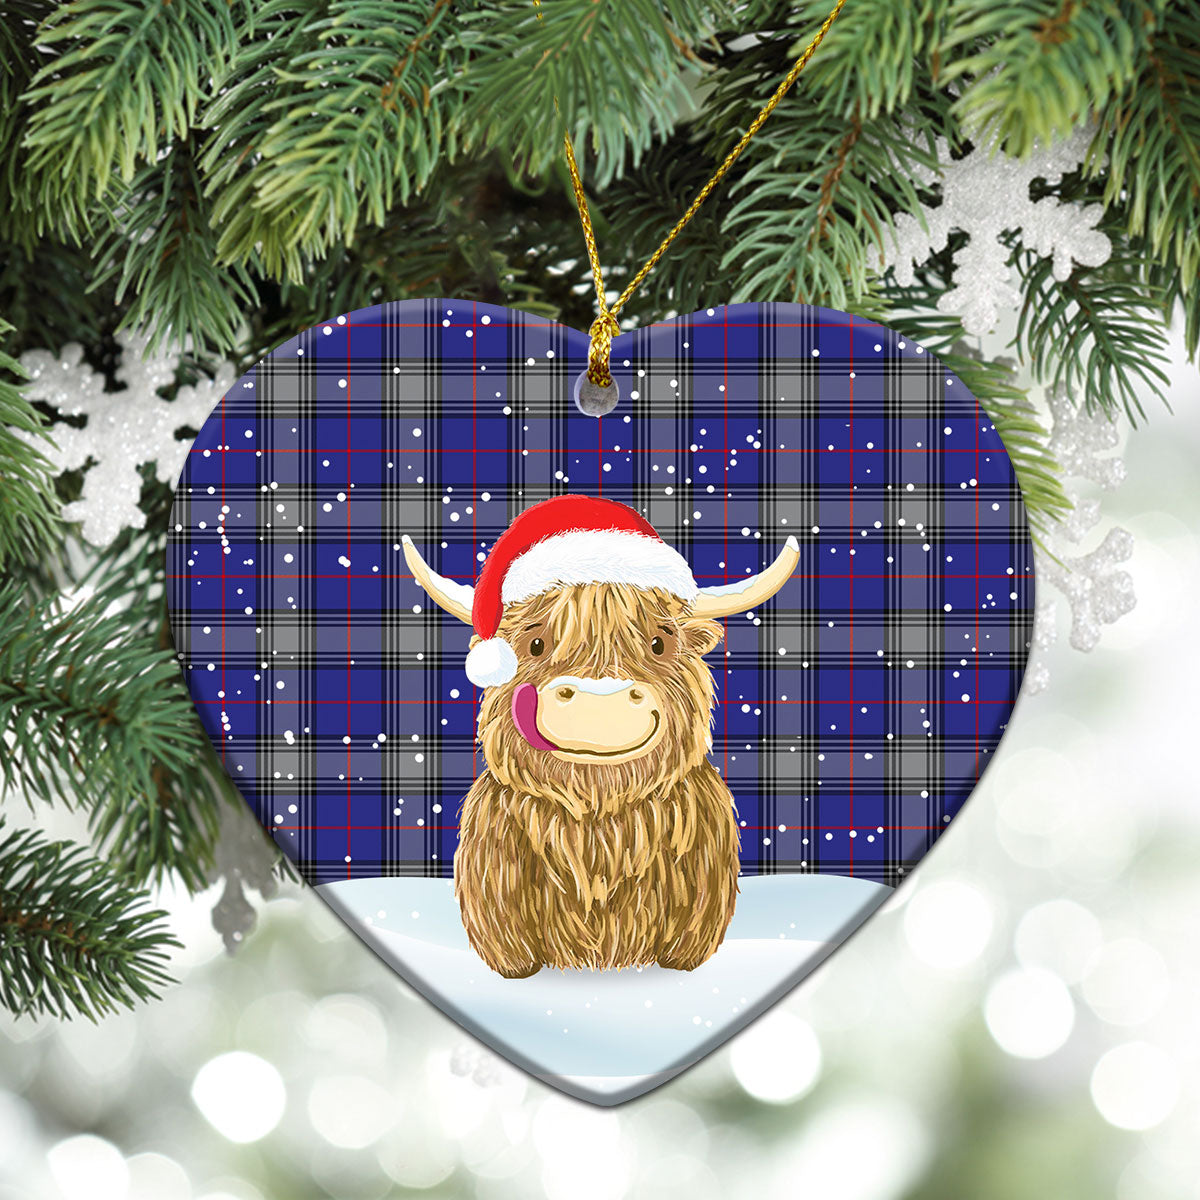 Kinnaird Tartan Christmas Ceramic Ornament - Highland Cows Style